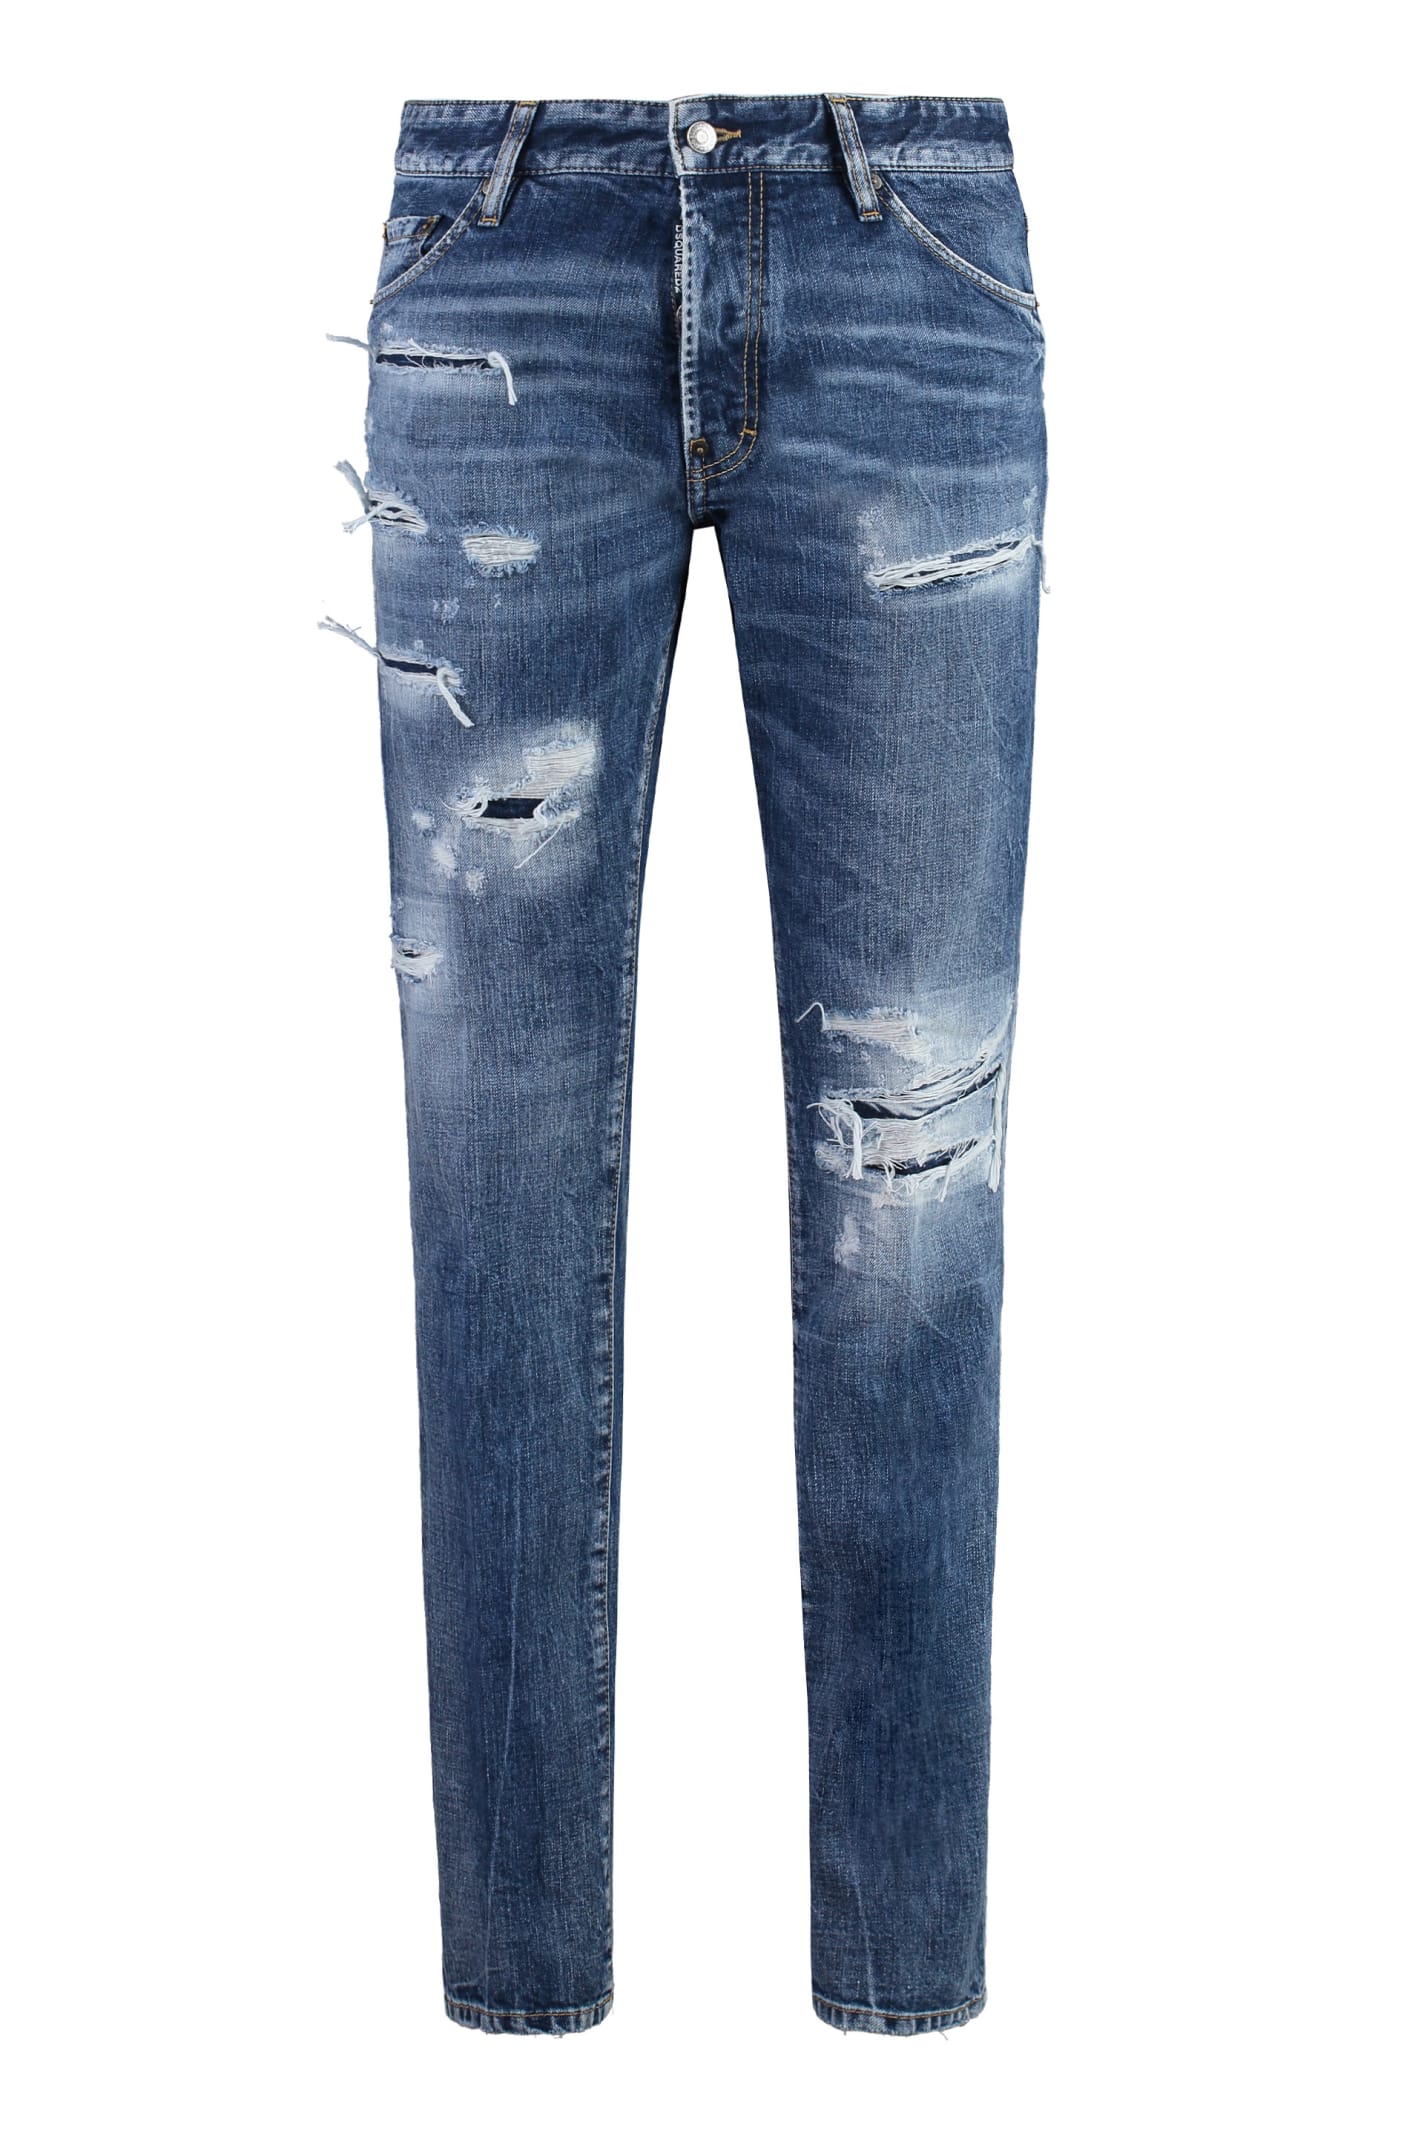 Shop Dsquared2 Cool Guy 5-pocket Jeans